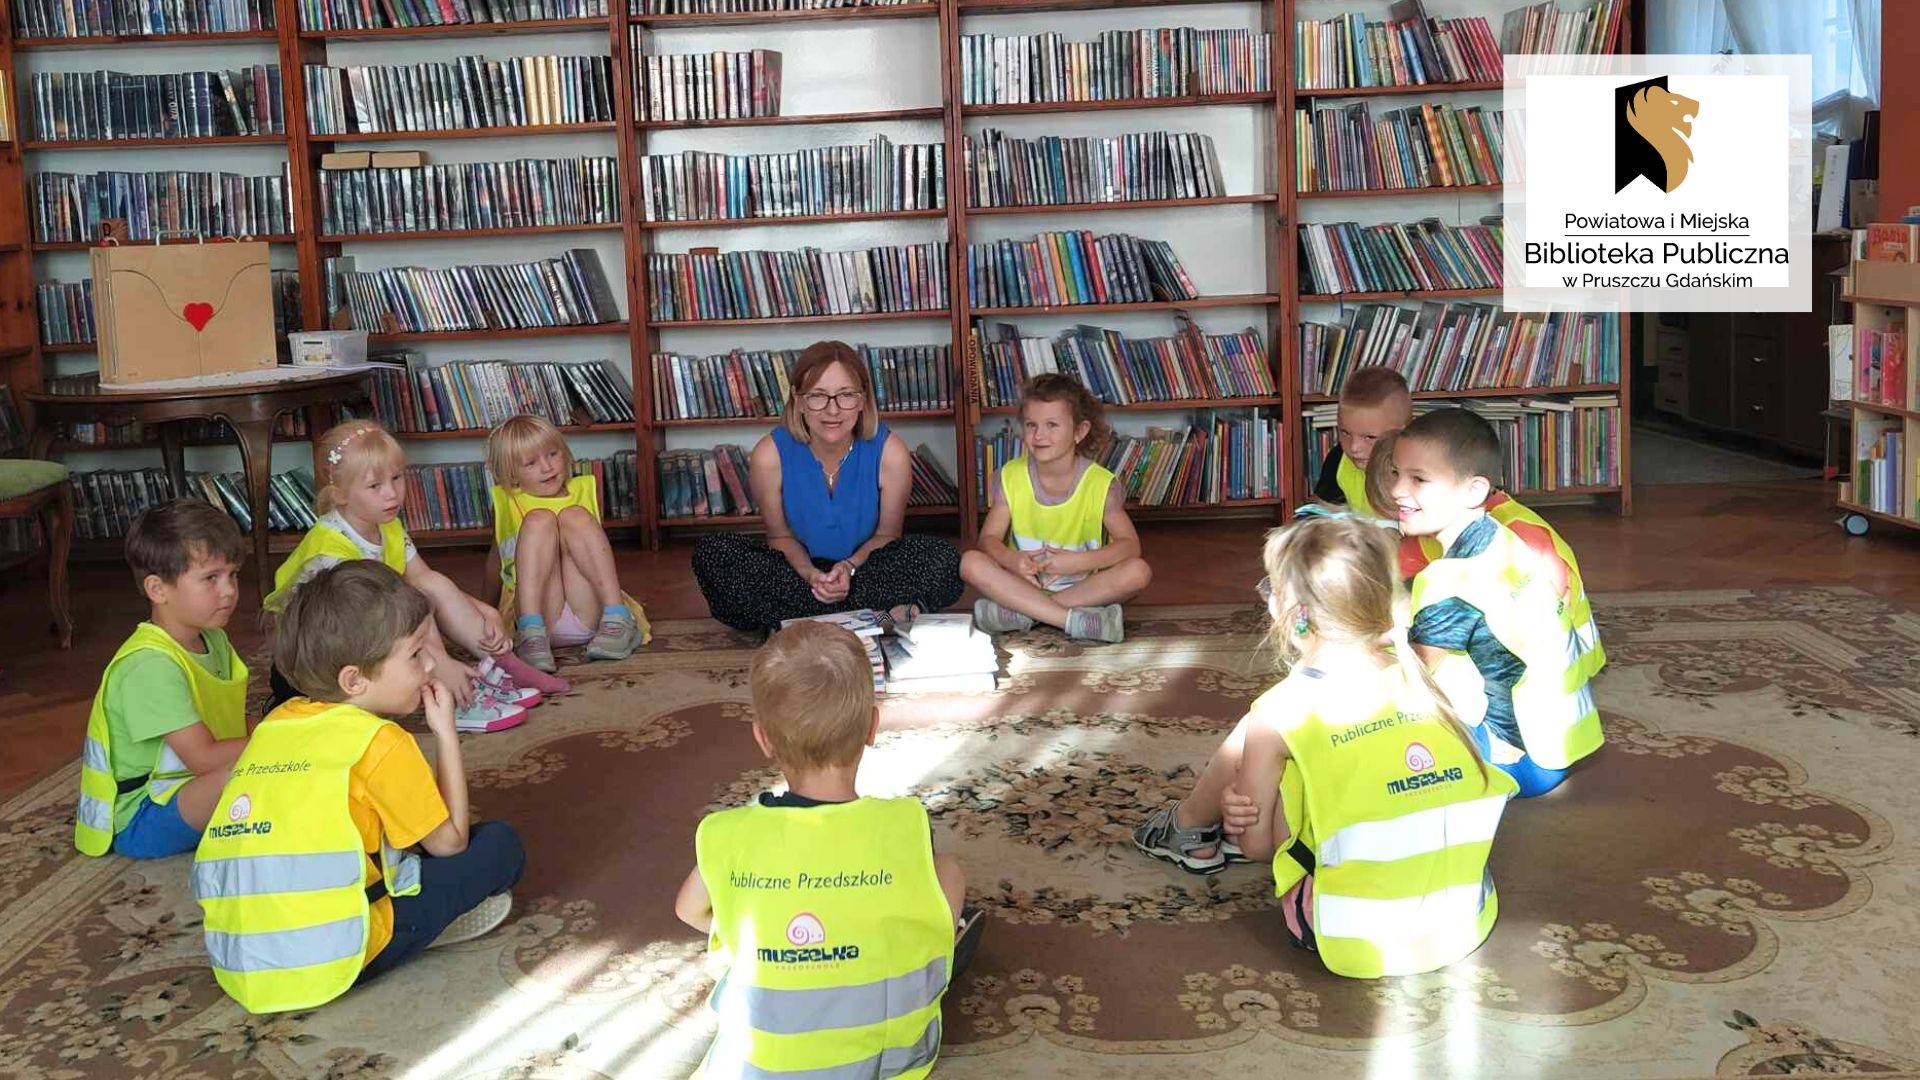 Dzieci wraz z panią bibliotekarką siedzą w okręgu na podłodze. Po lewej na stoliku stoi teatrzyk kamishibai. W tle regały z książkami.